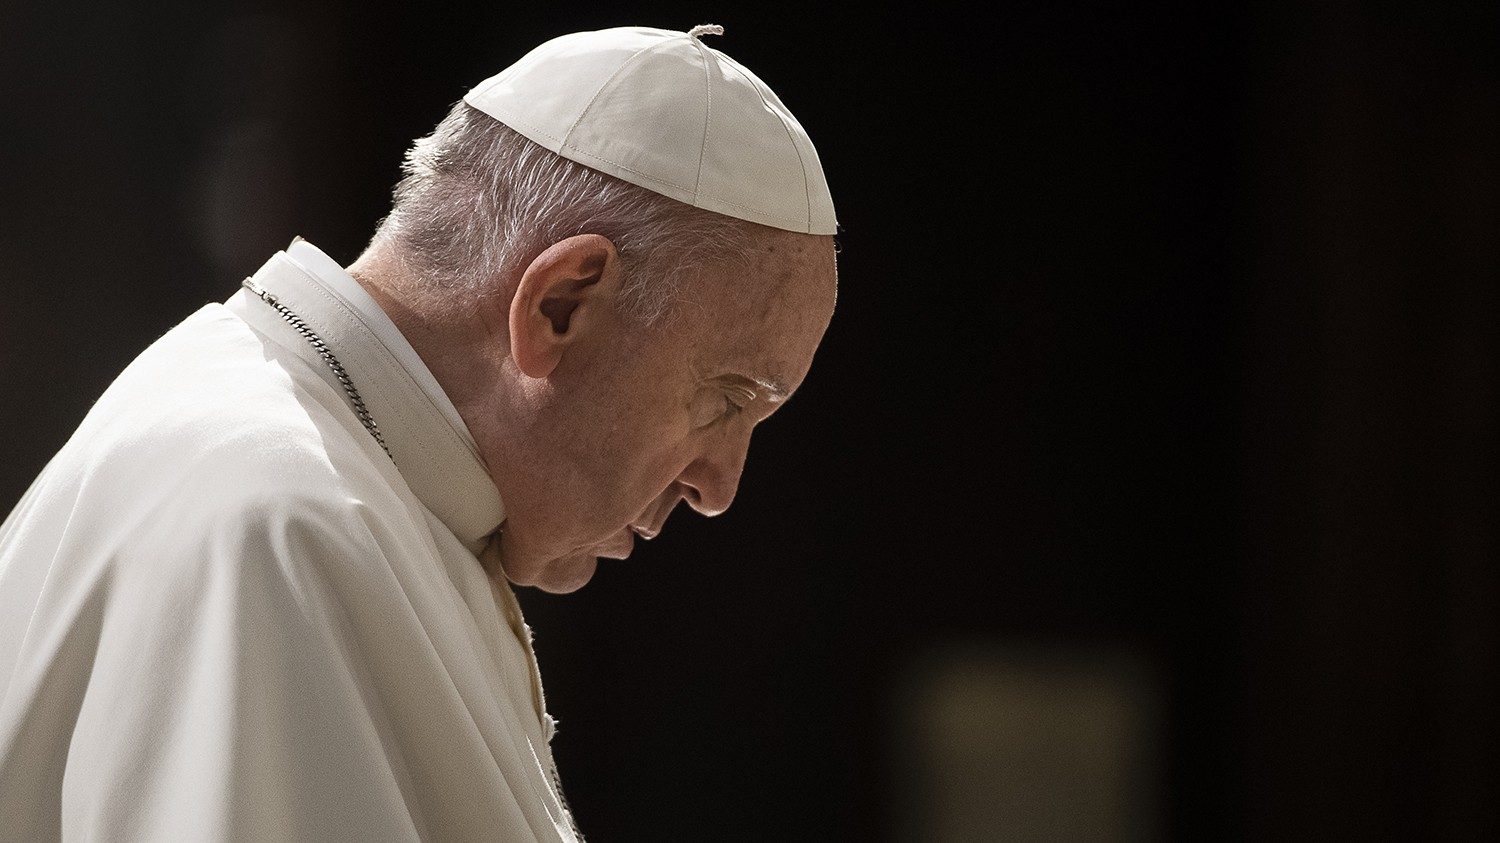 La comunicación global: ¿Una fuente de hostilidad?… el papa Francisco lanza una advertencia contundente